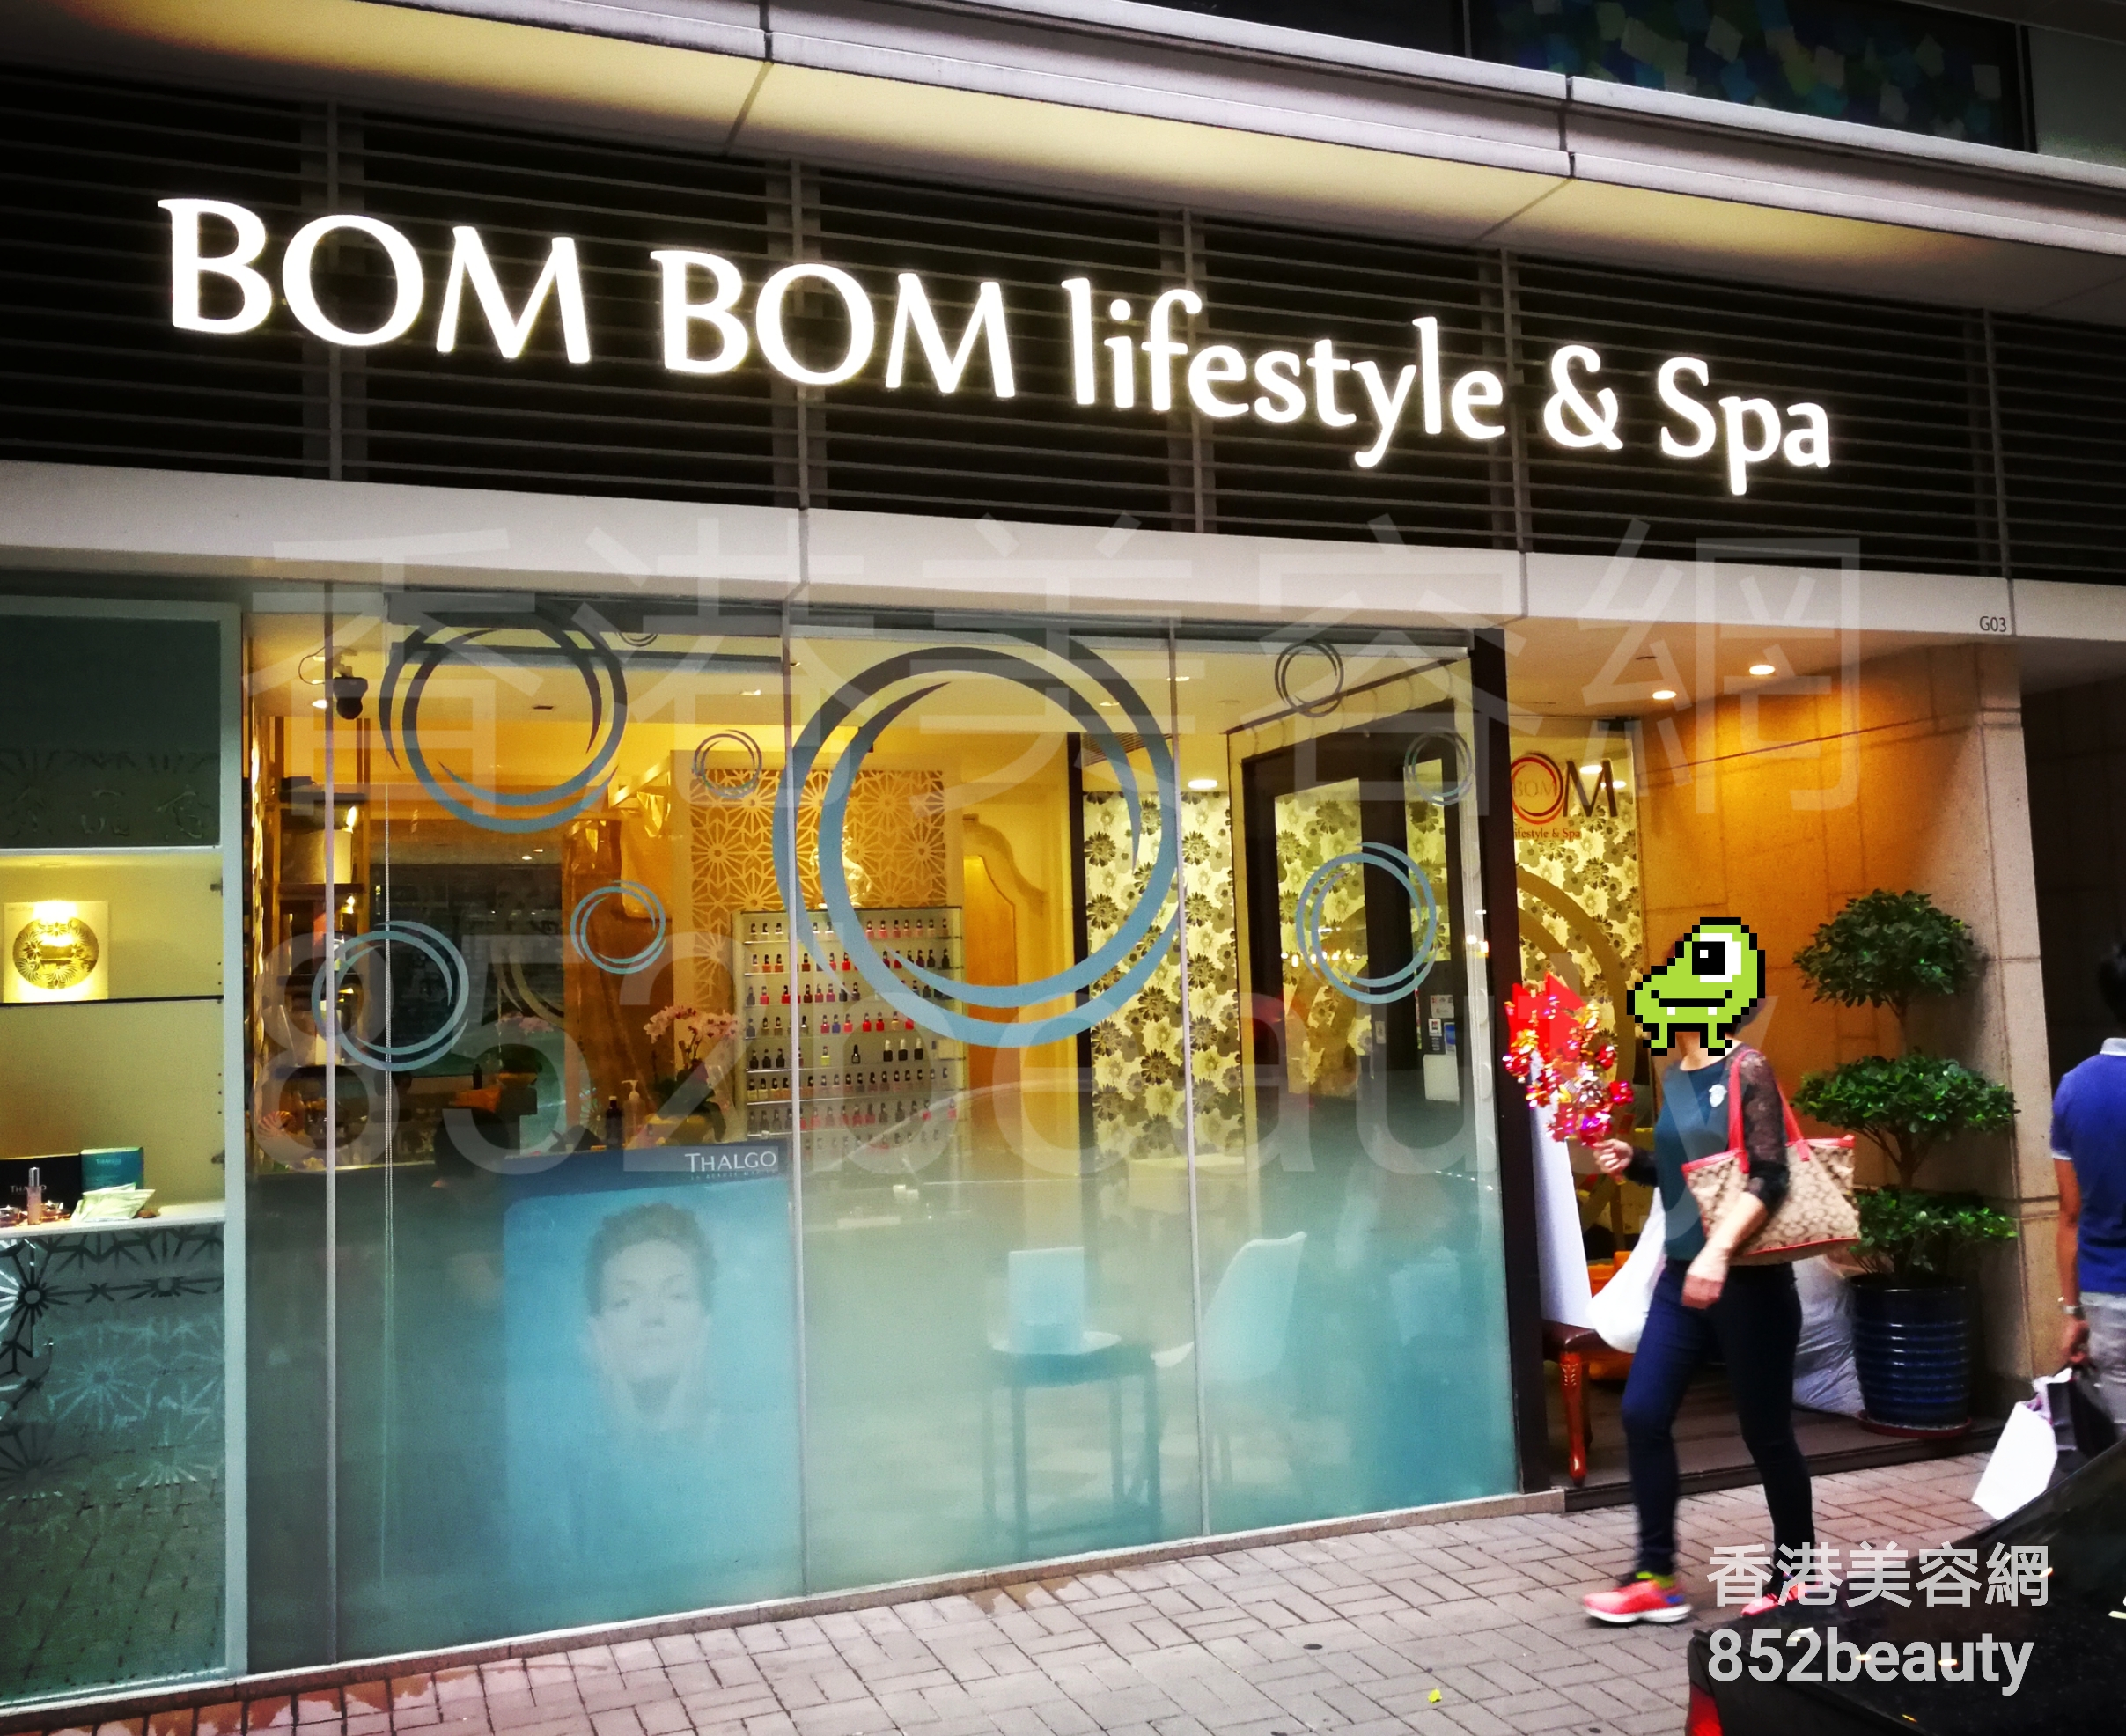 脫毛: BOM BOM lifestyle & Spa